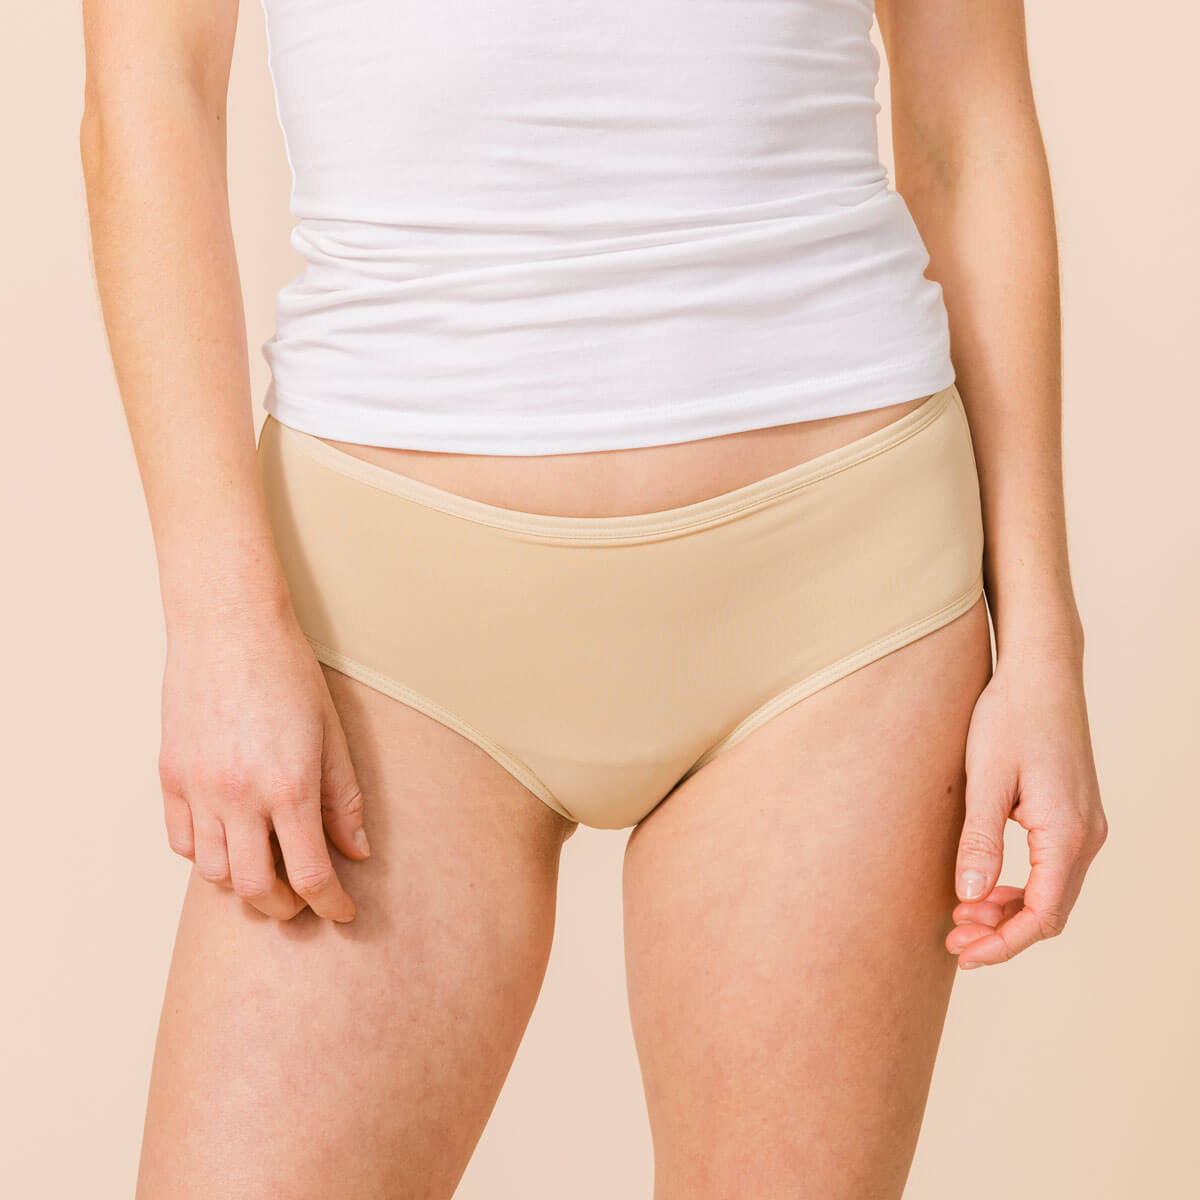 June Period Underwear - Beige